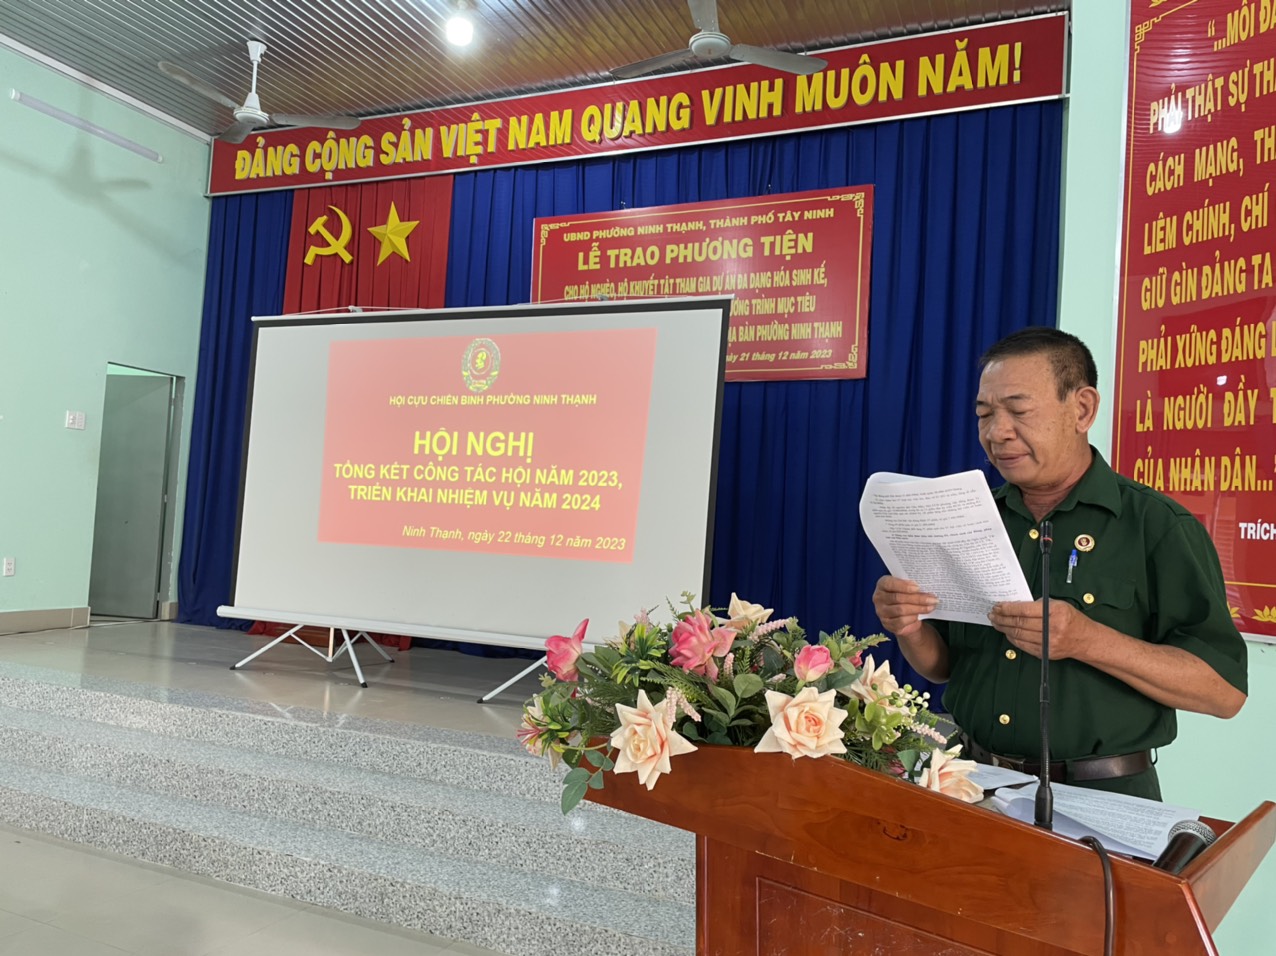 Hội Cựu Chiến Binh phường Ninh Thạnh tổ chức hội nghị tổng kết công tác hội năm 2023